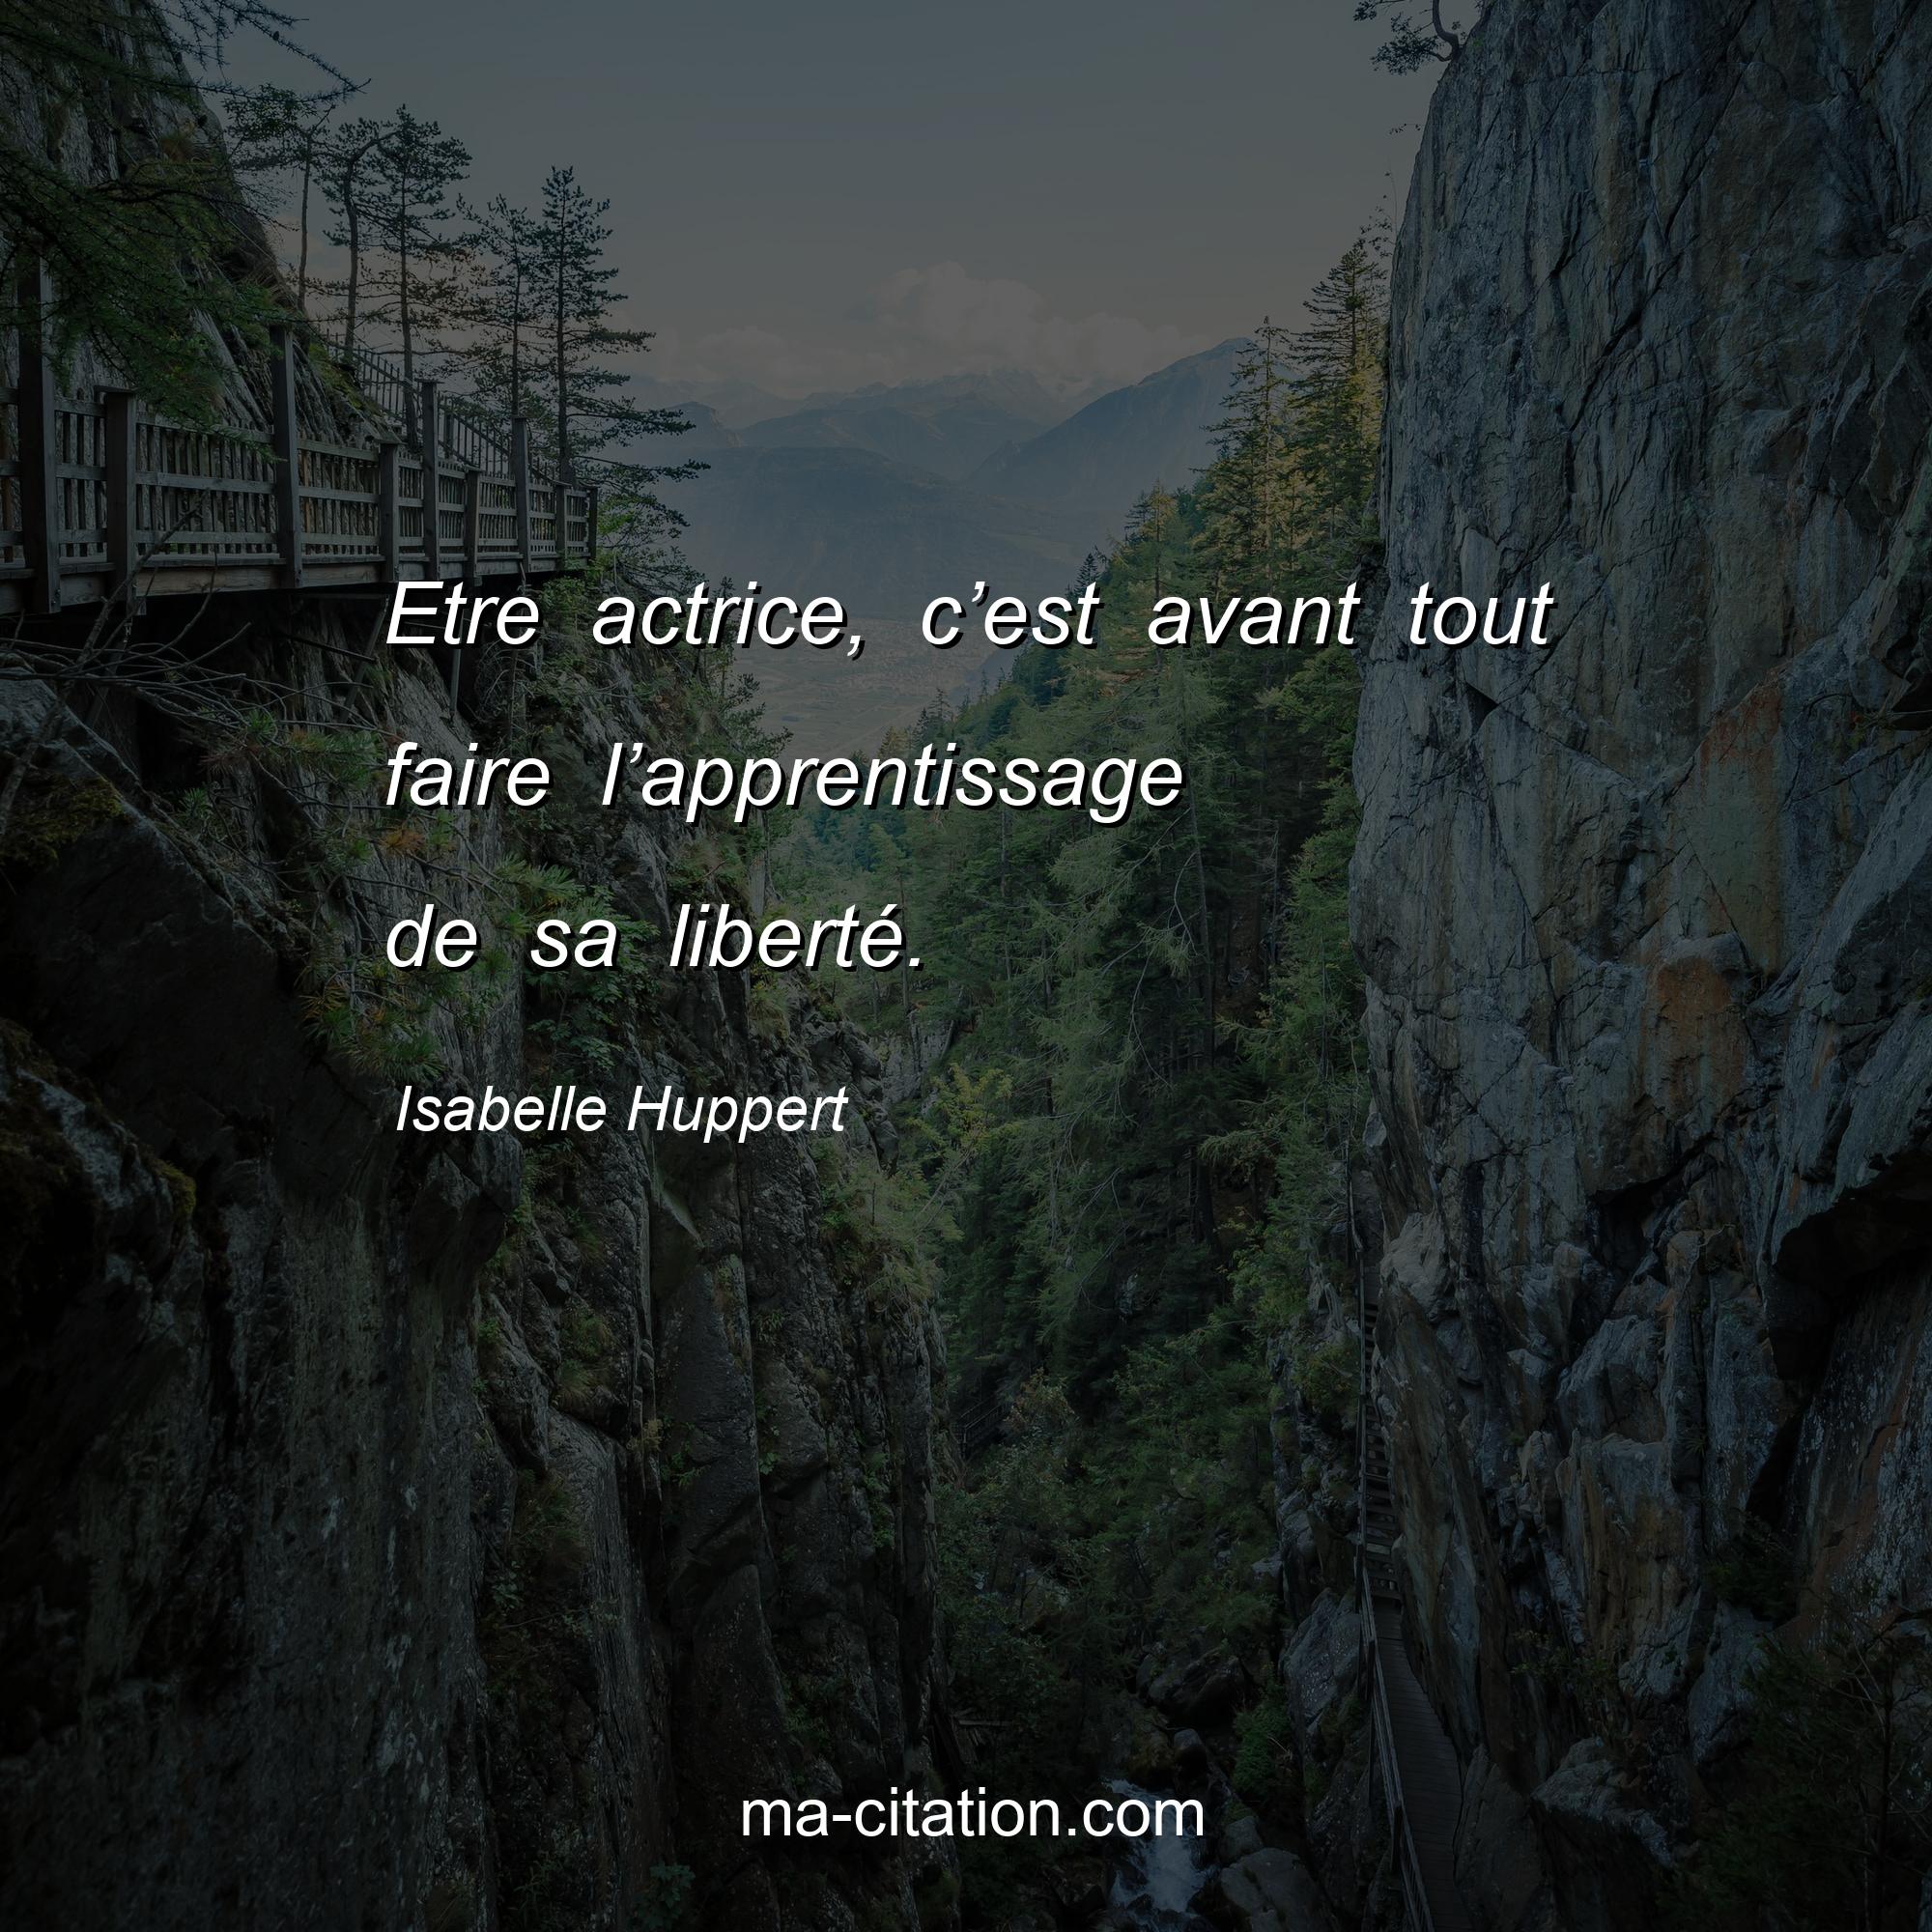 Isabelle Huppert : Etre actrice, c’est avant tout faire l’apprentissage de sa liberté.